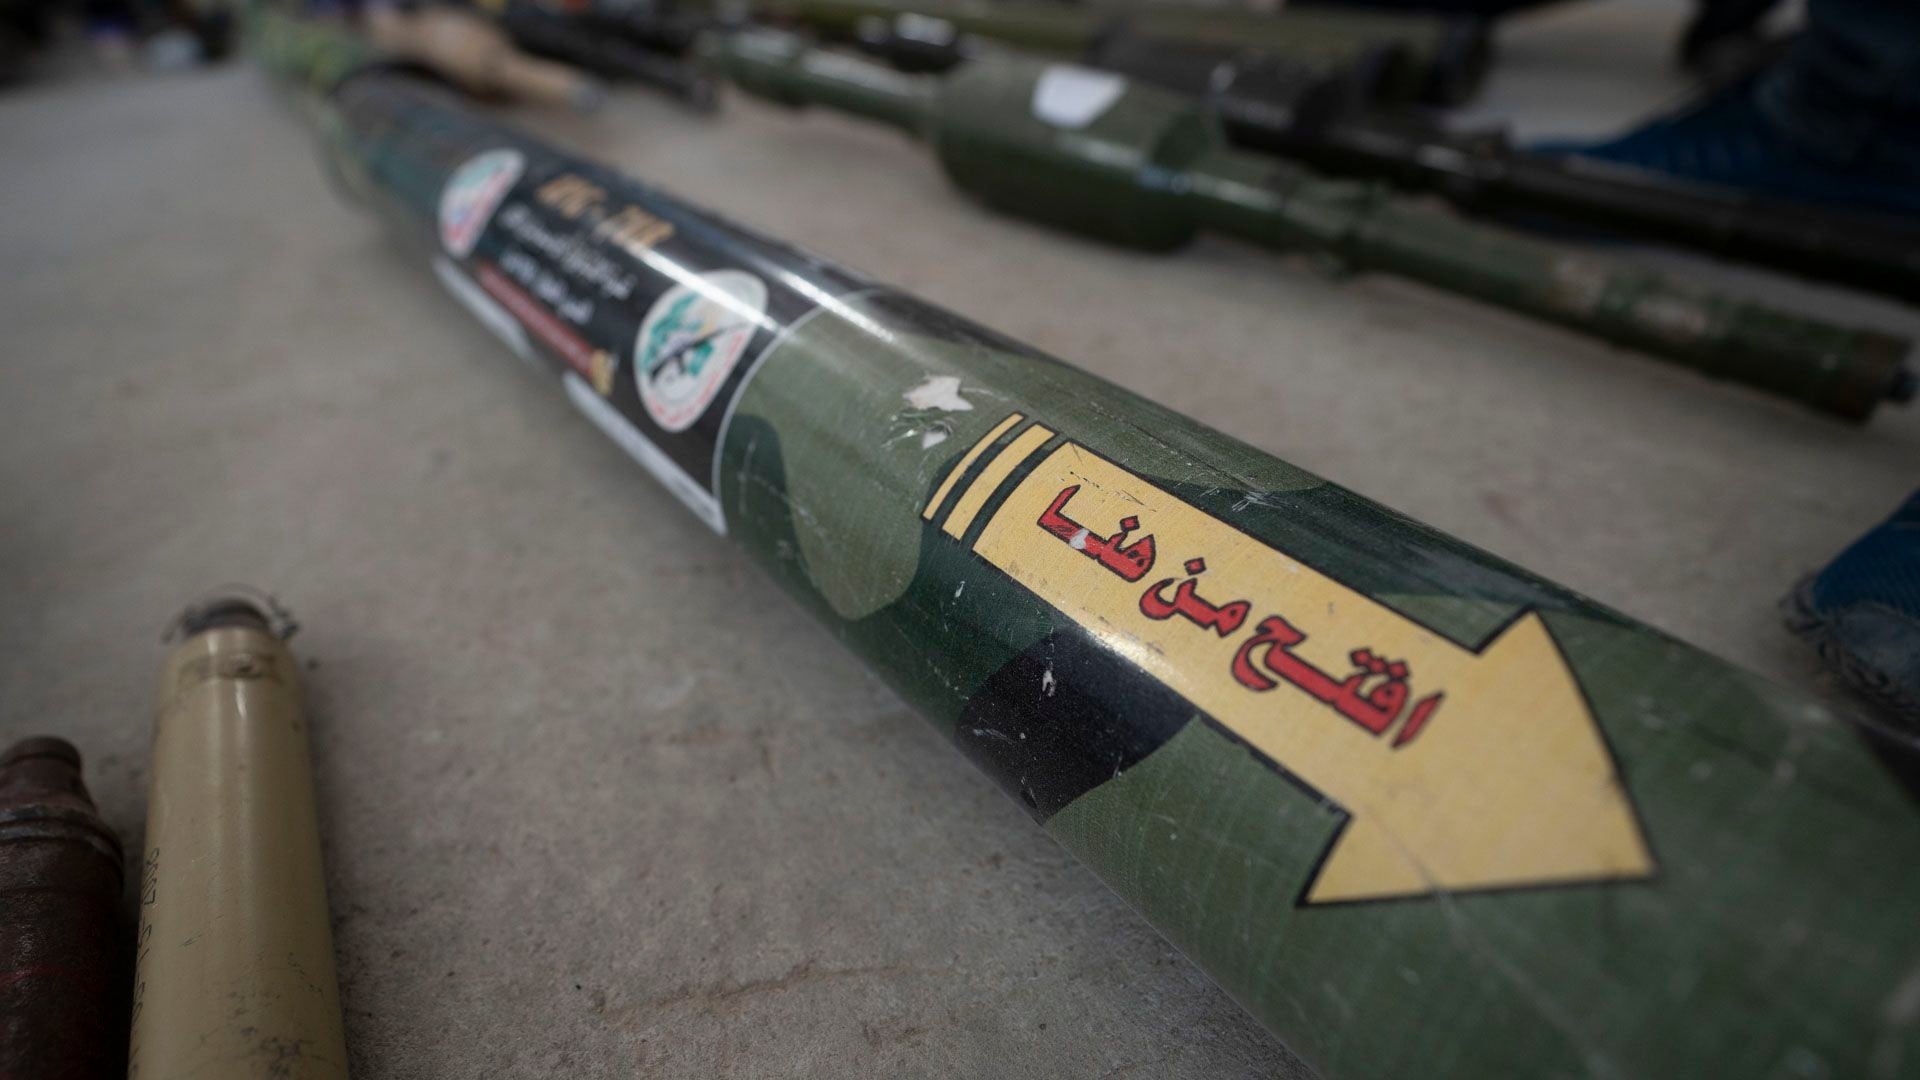 RPG (lanza granadas antitanques) fabricada por Hamas con el apoyo técnico de Irán (Lihueel Althabe/Infobae)